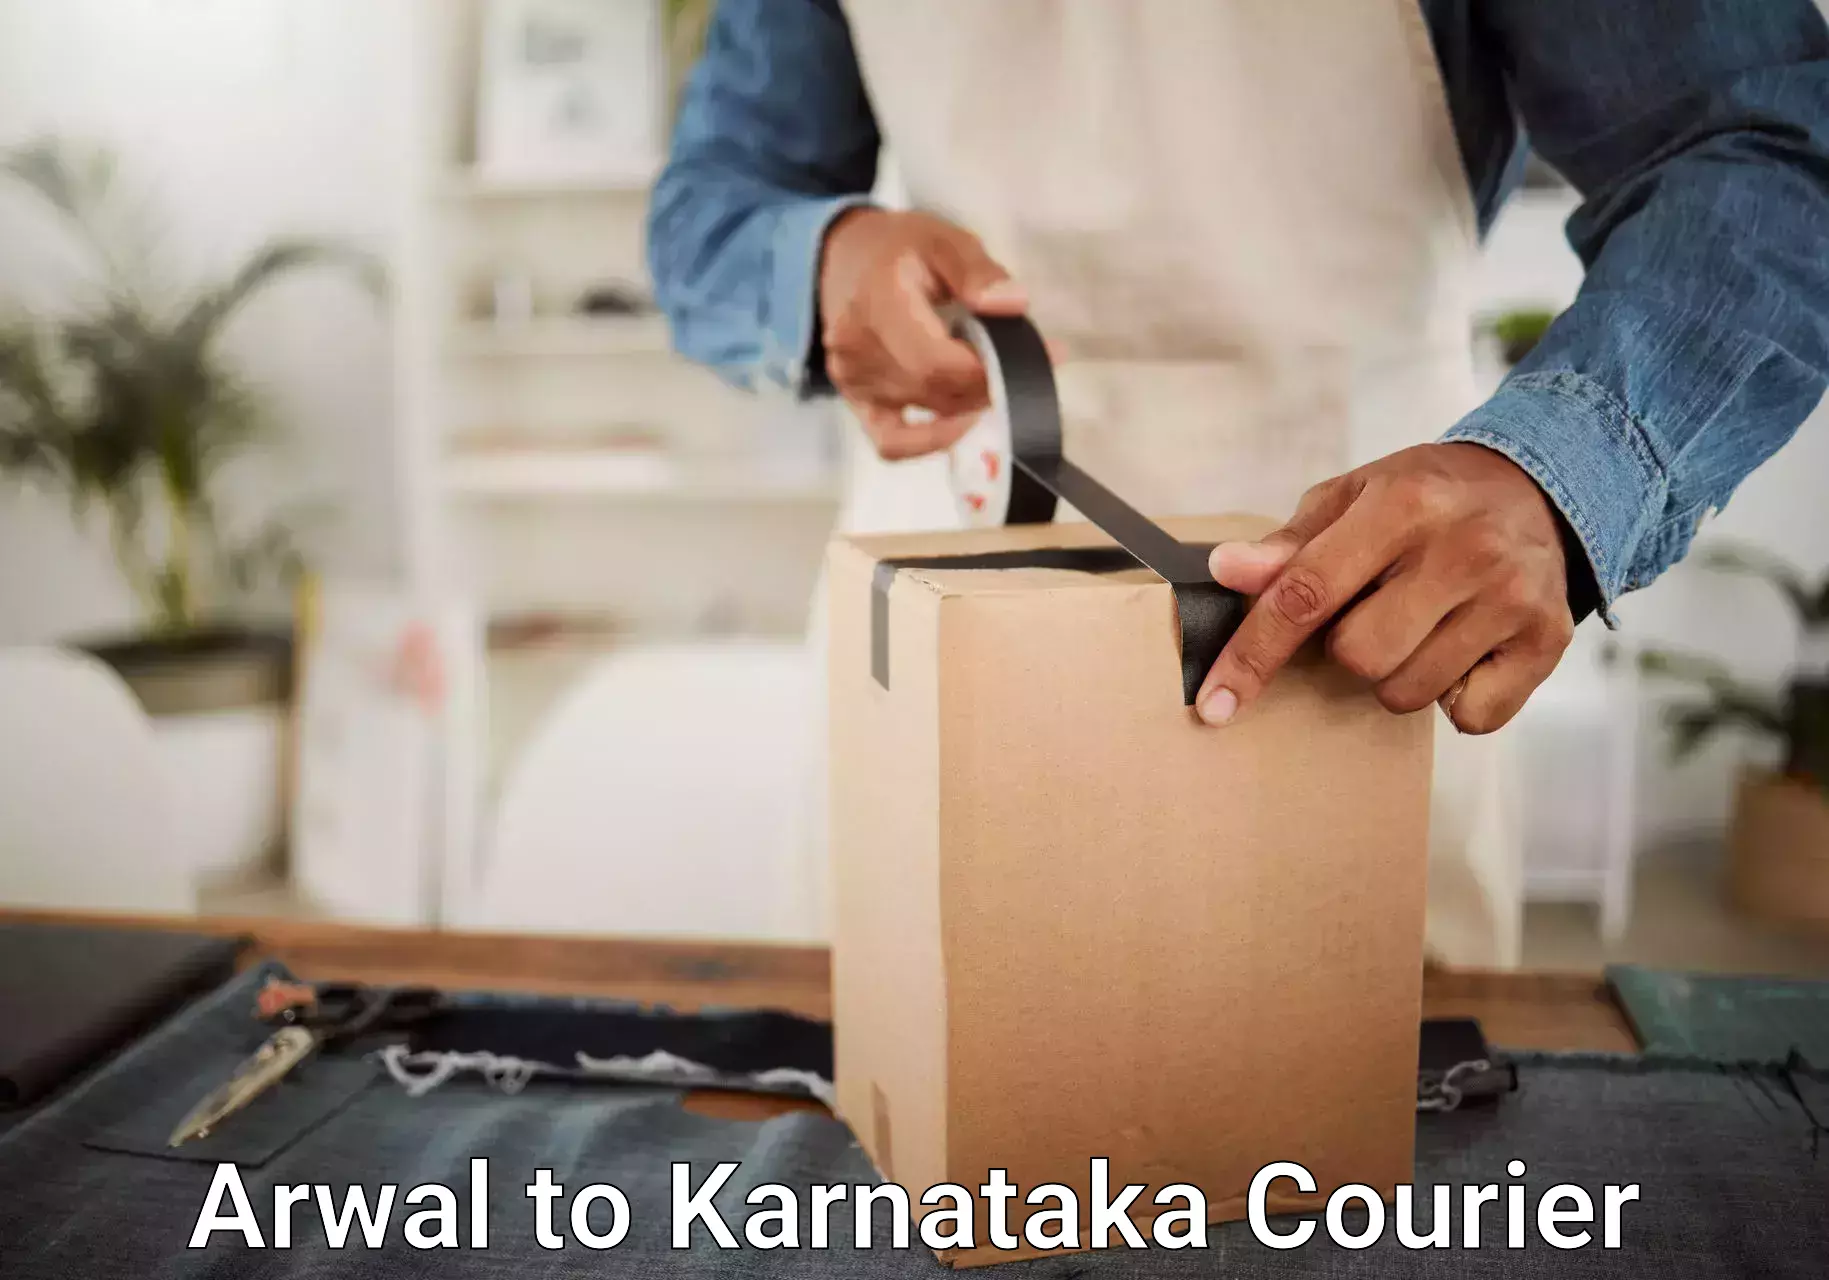 Baggage transport technology Arwal to Karnataka